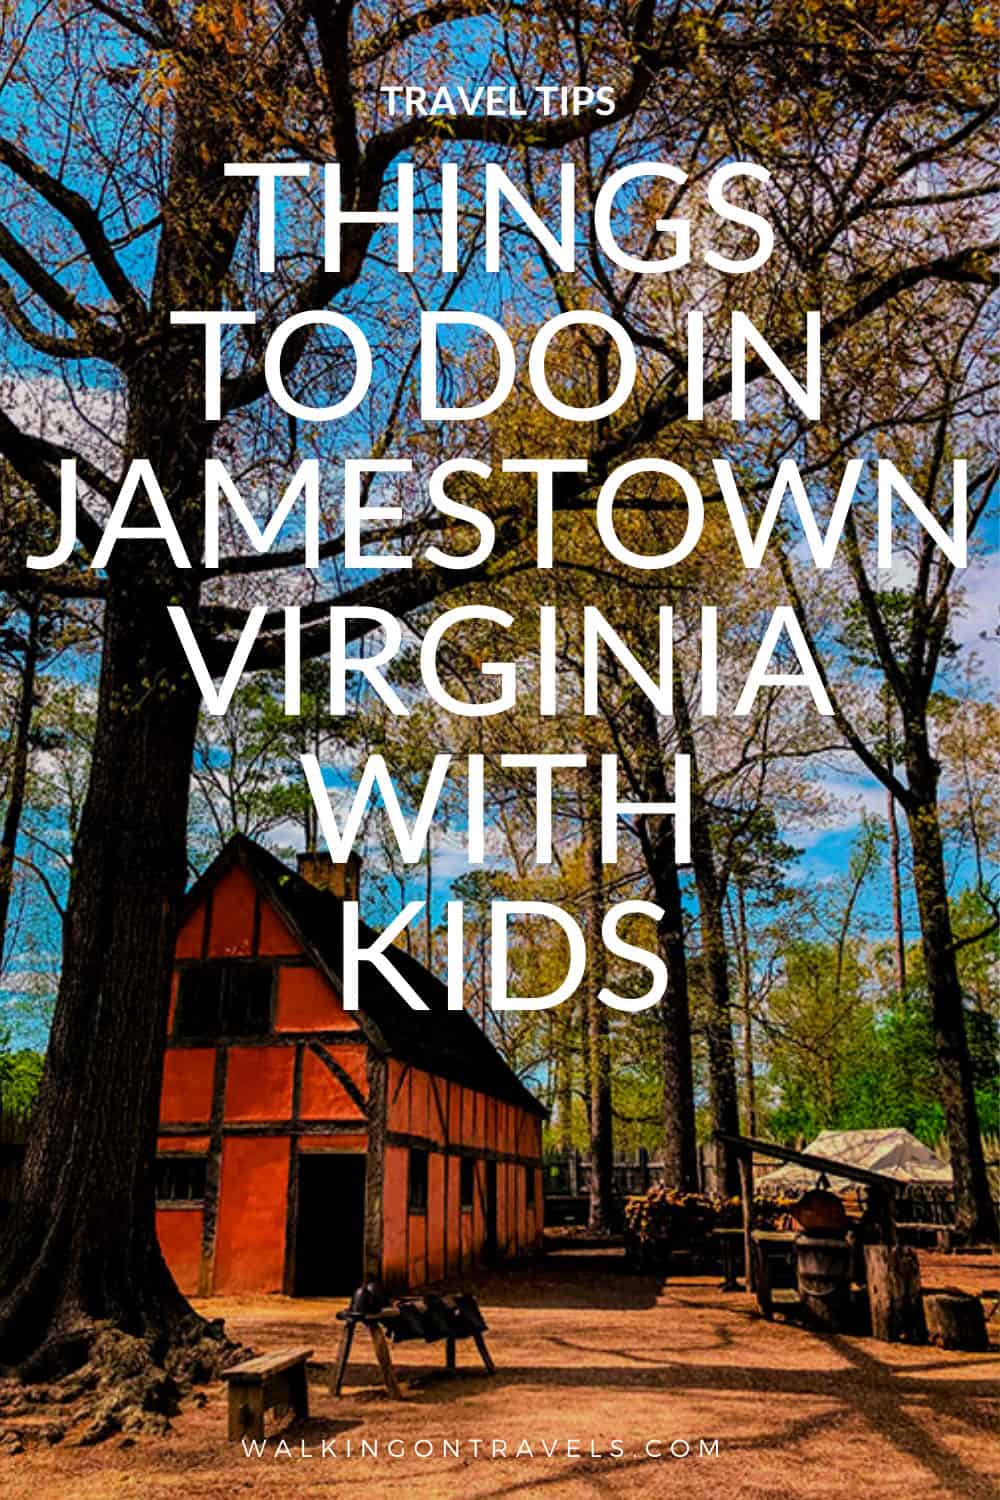 8 ways to explore Jamestown Virginia with Kids